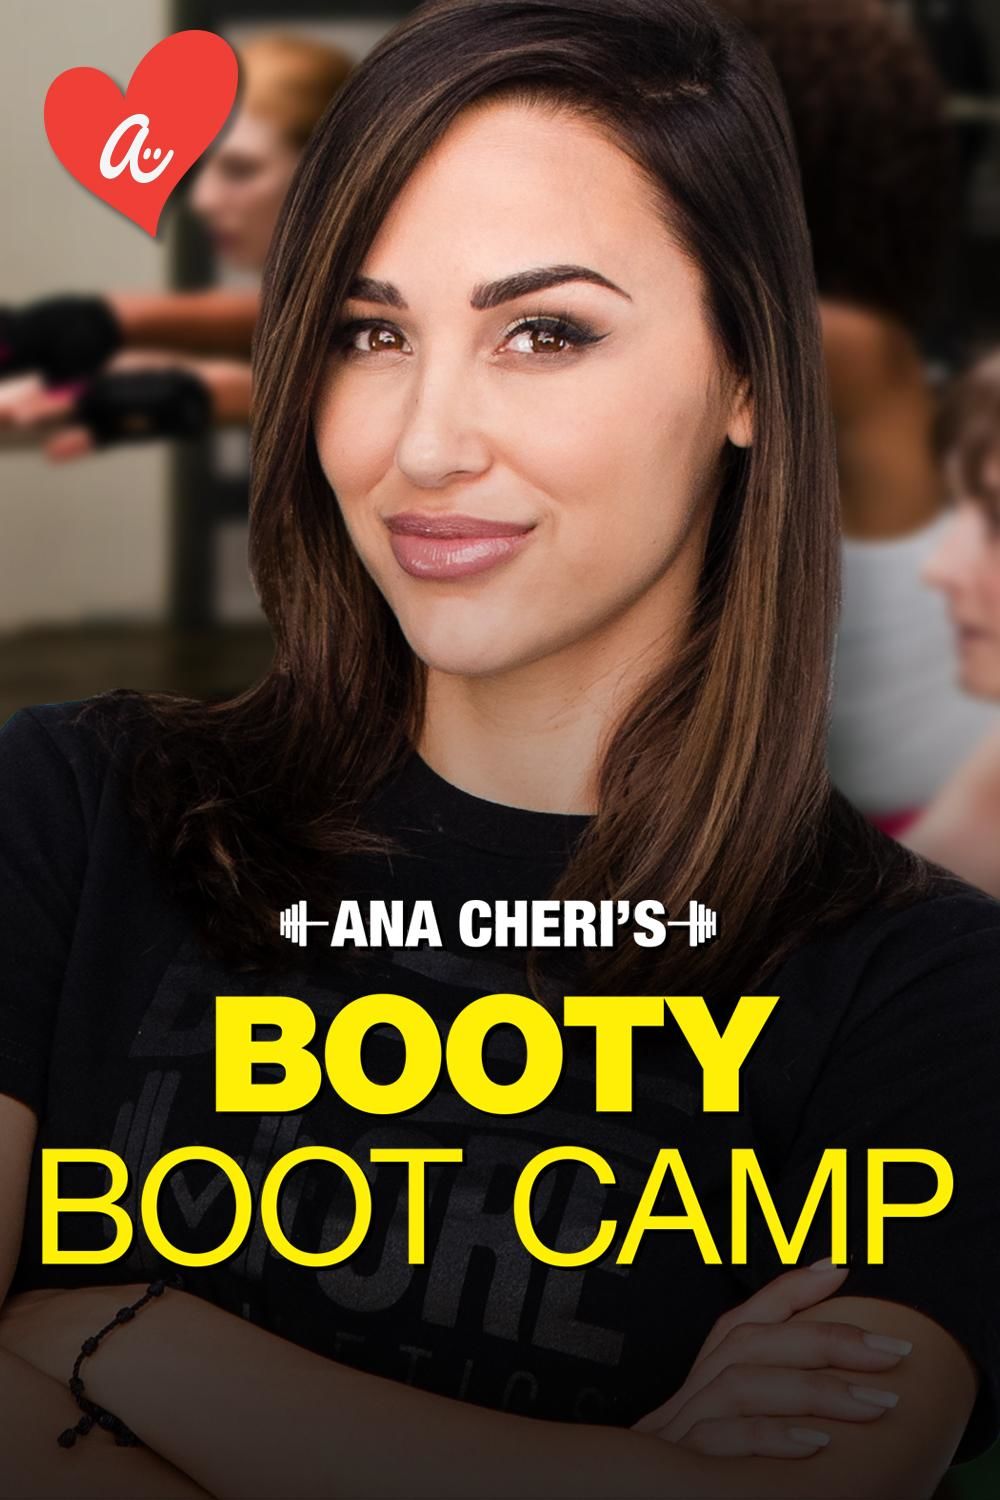 Ana Cheri's Booty Boot Camp